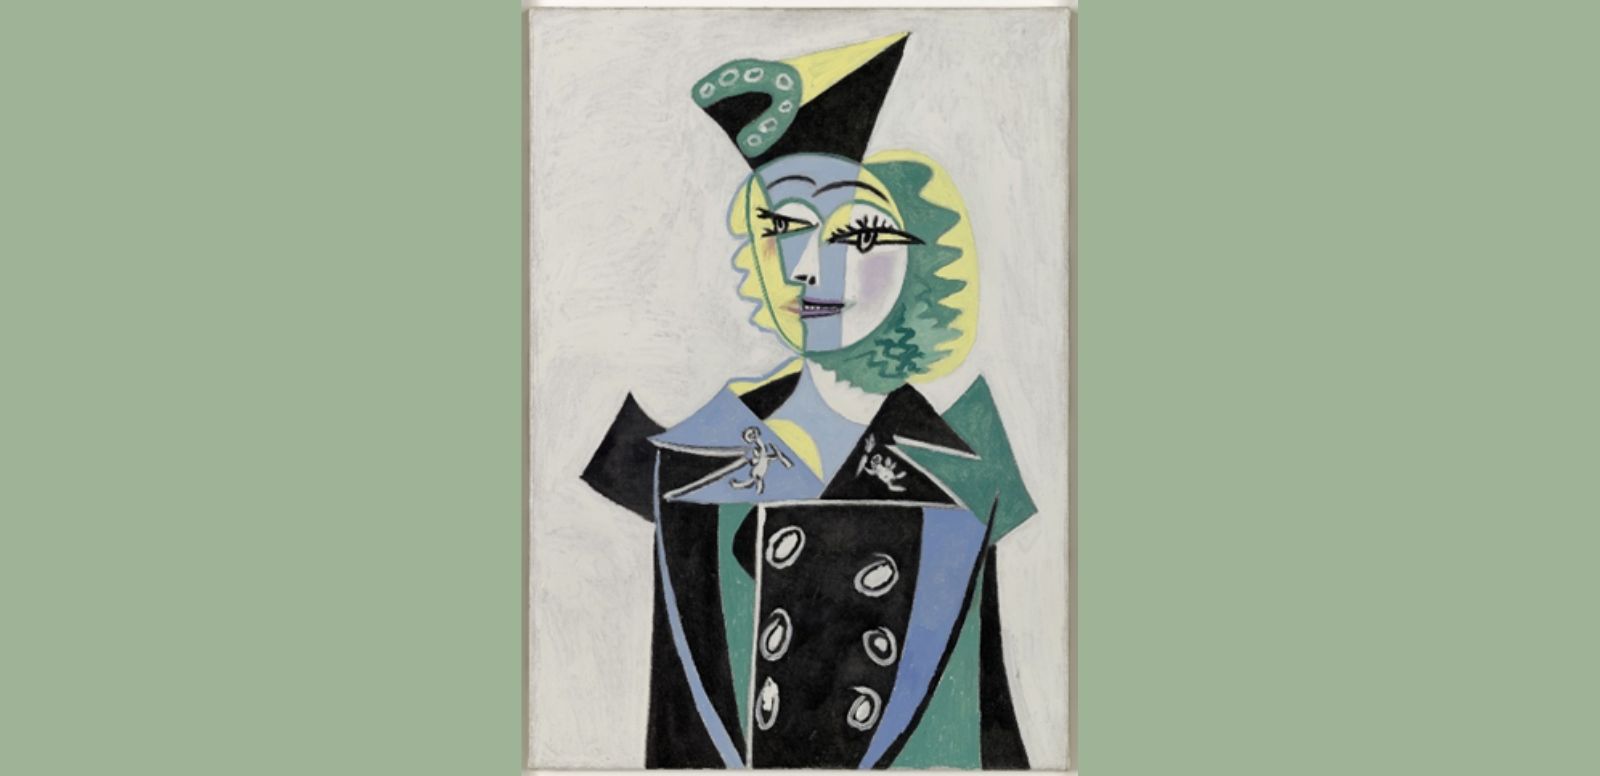 Pablo Picasso, “Retrato de Nusch Éluard”, 1937